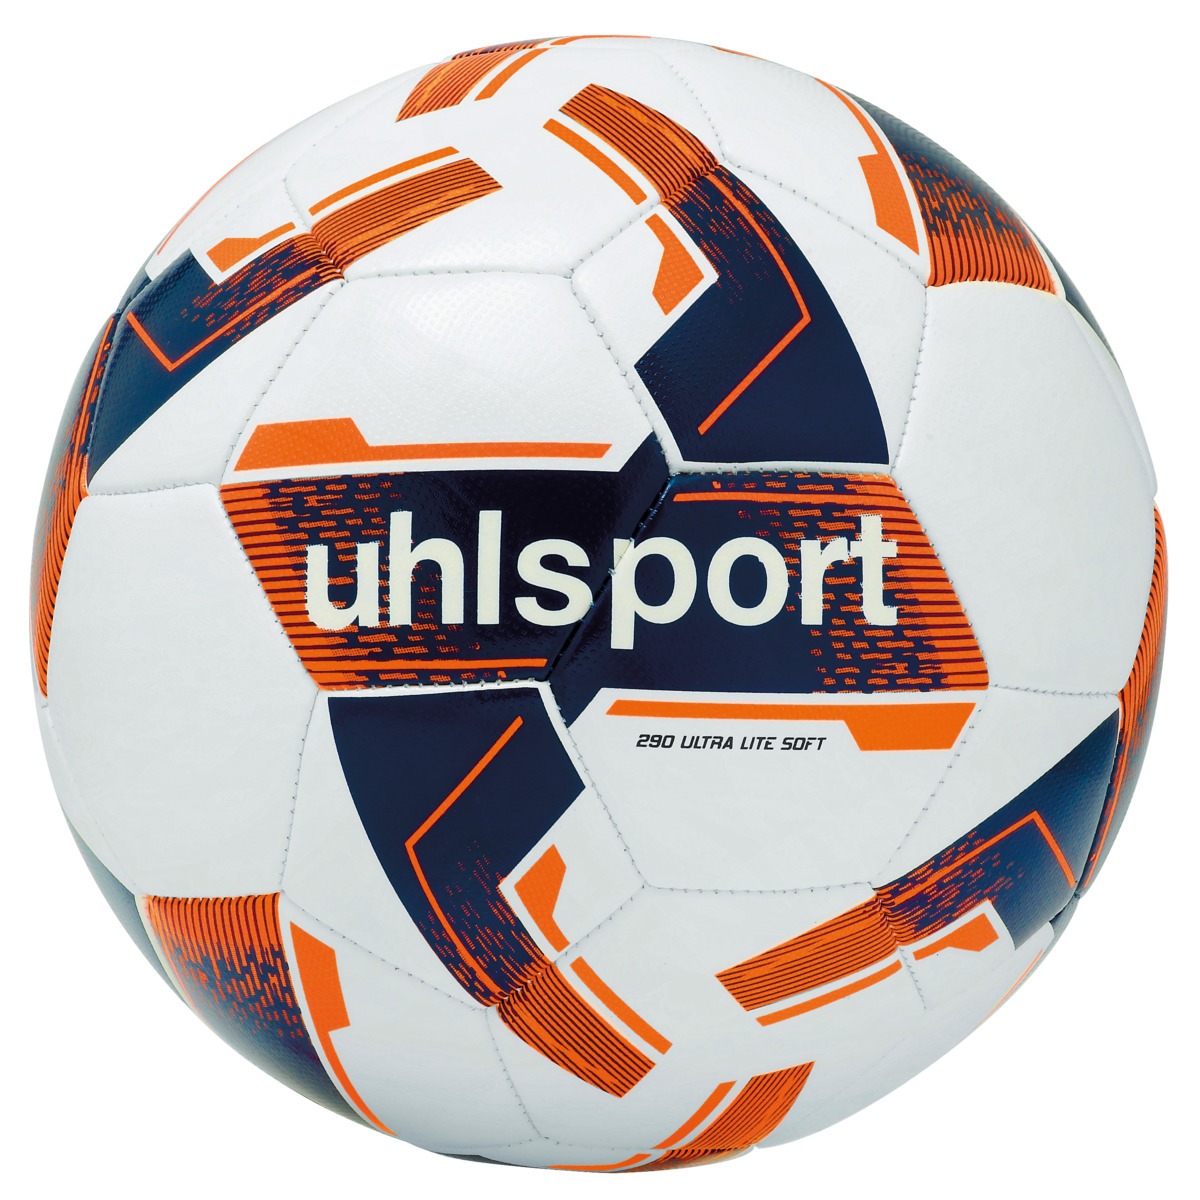 BALLON DE FOOTBALL ULTRA LITE SOFT 290 BLANC - UHL SPORT